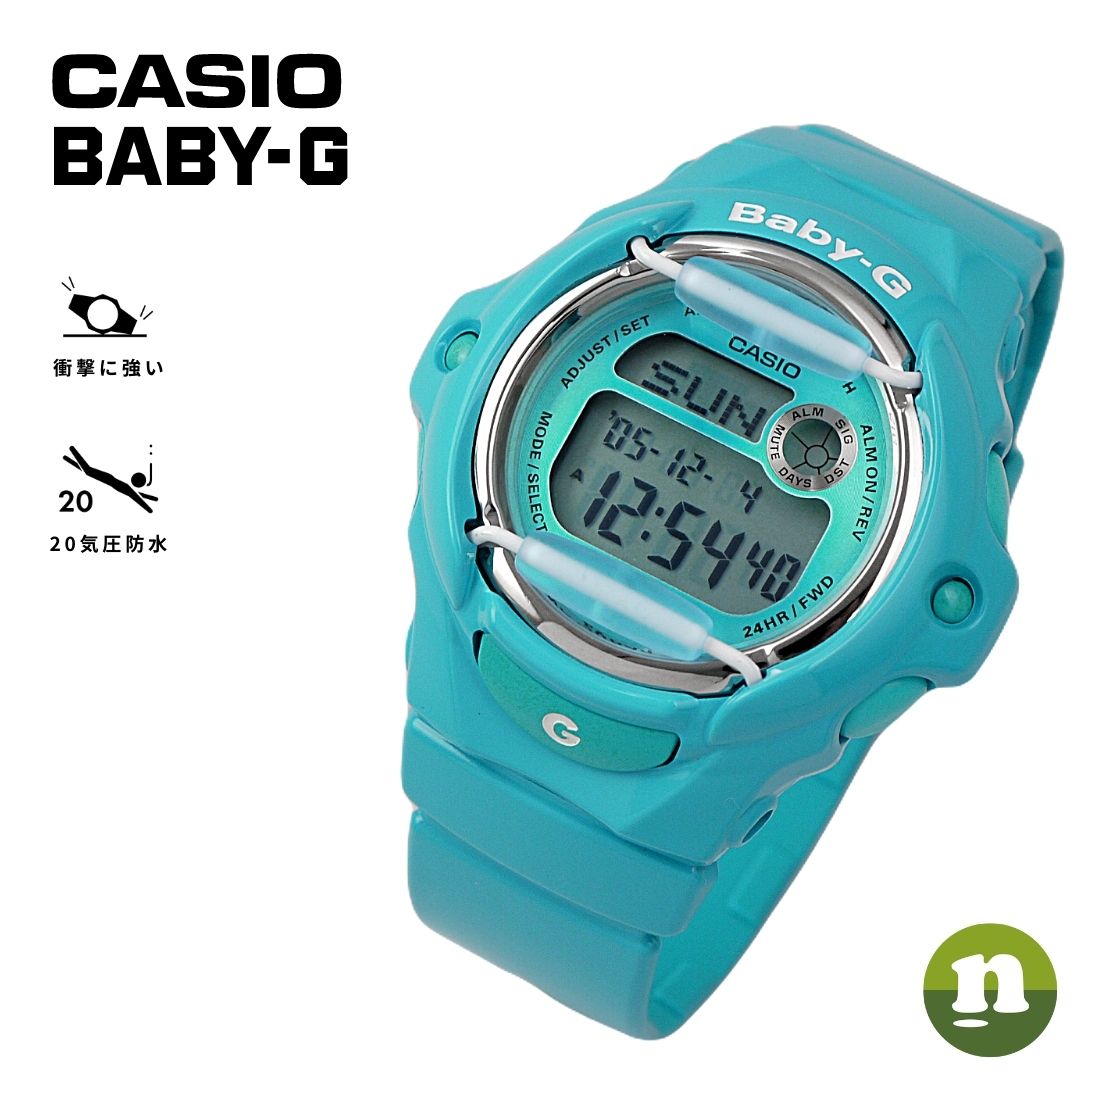 CASIO BABY-G カシオ BG-169R-1 ベビーG